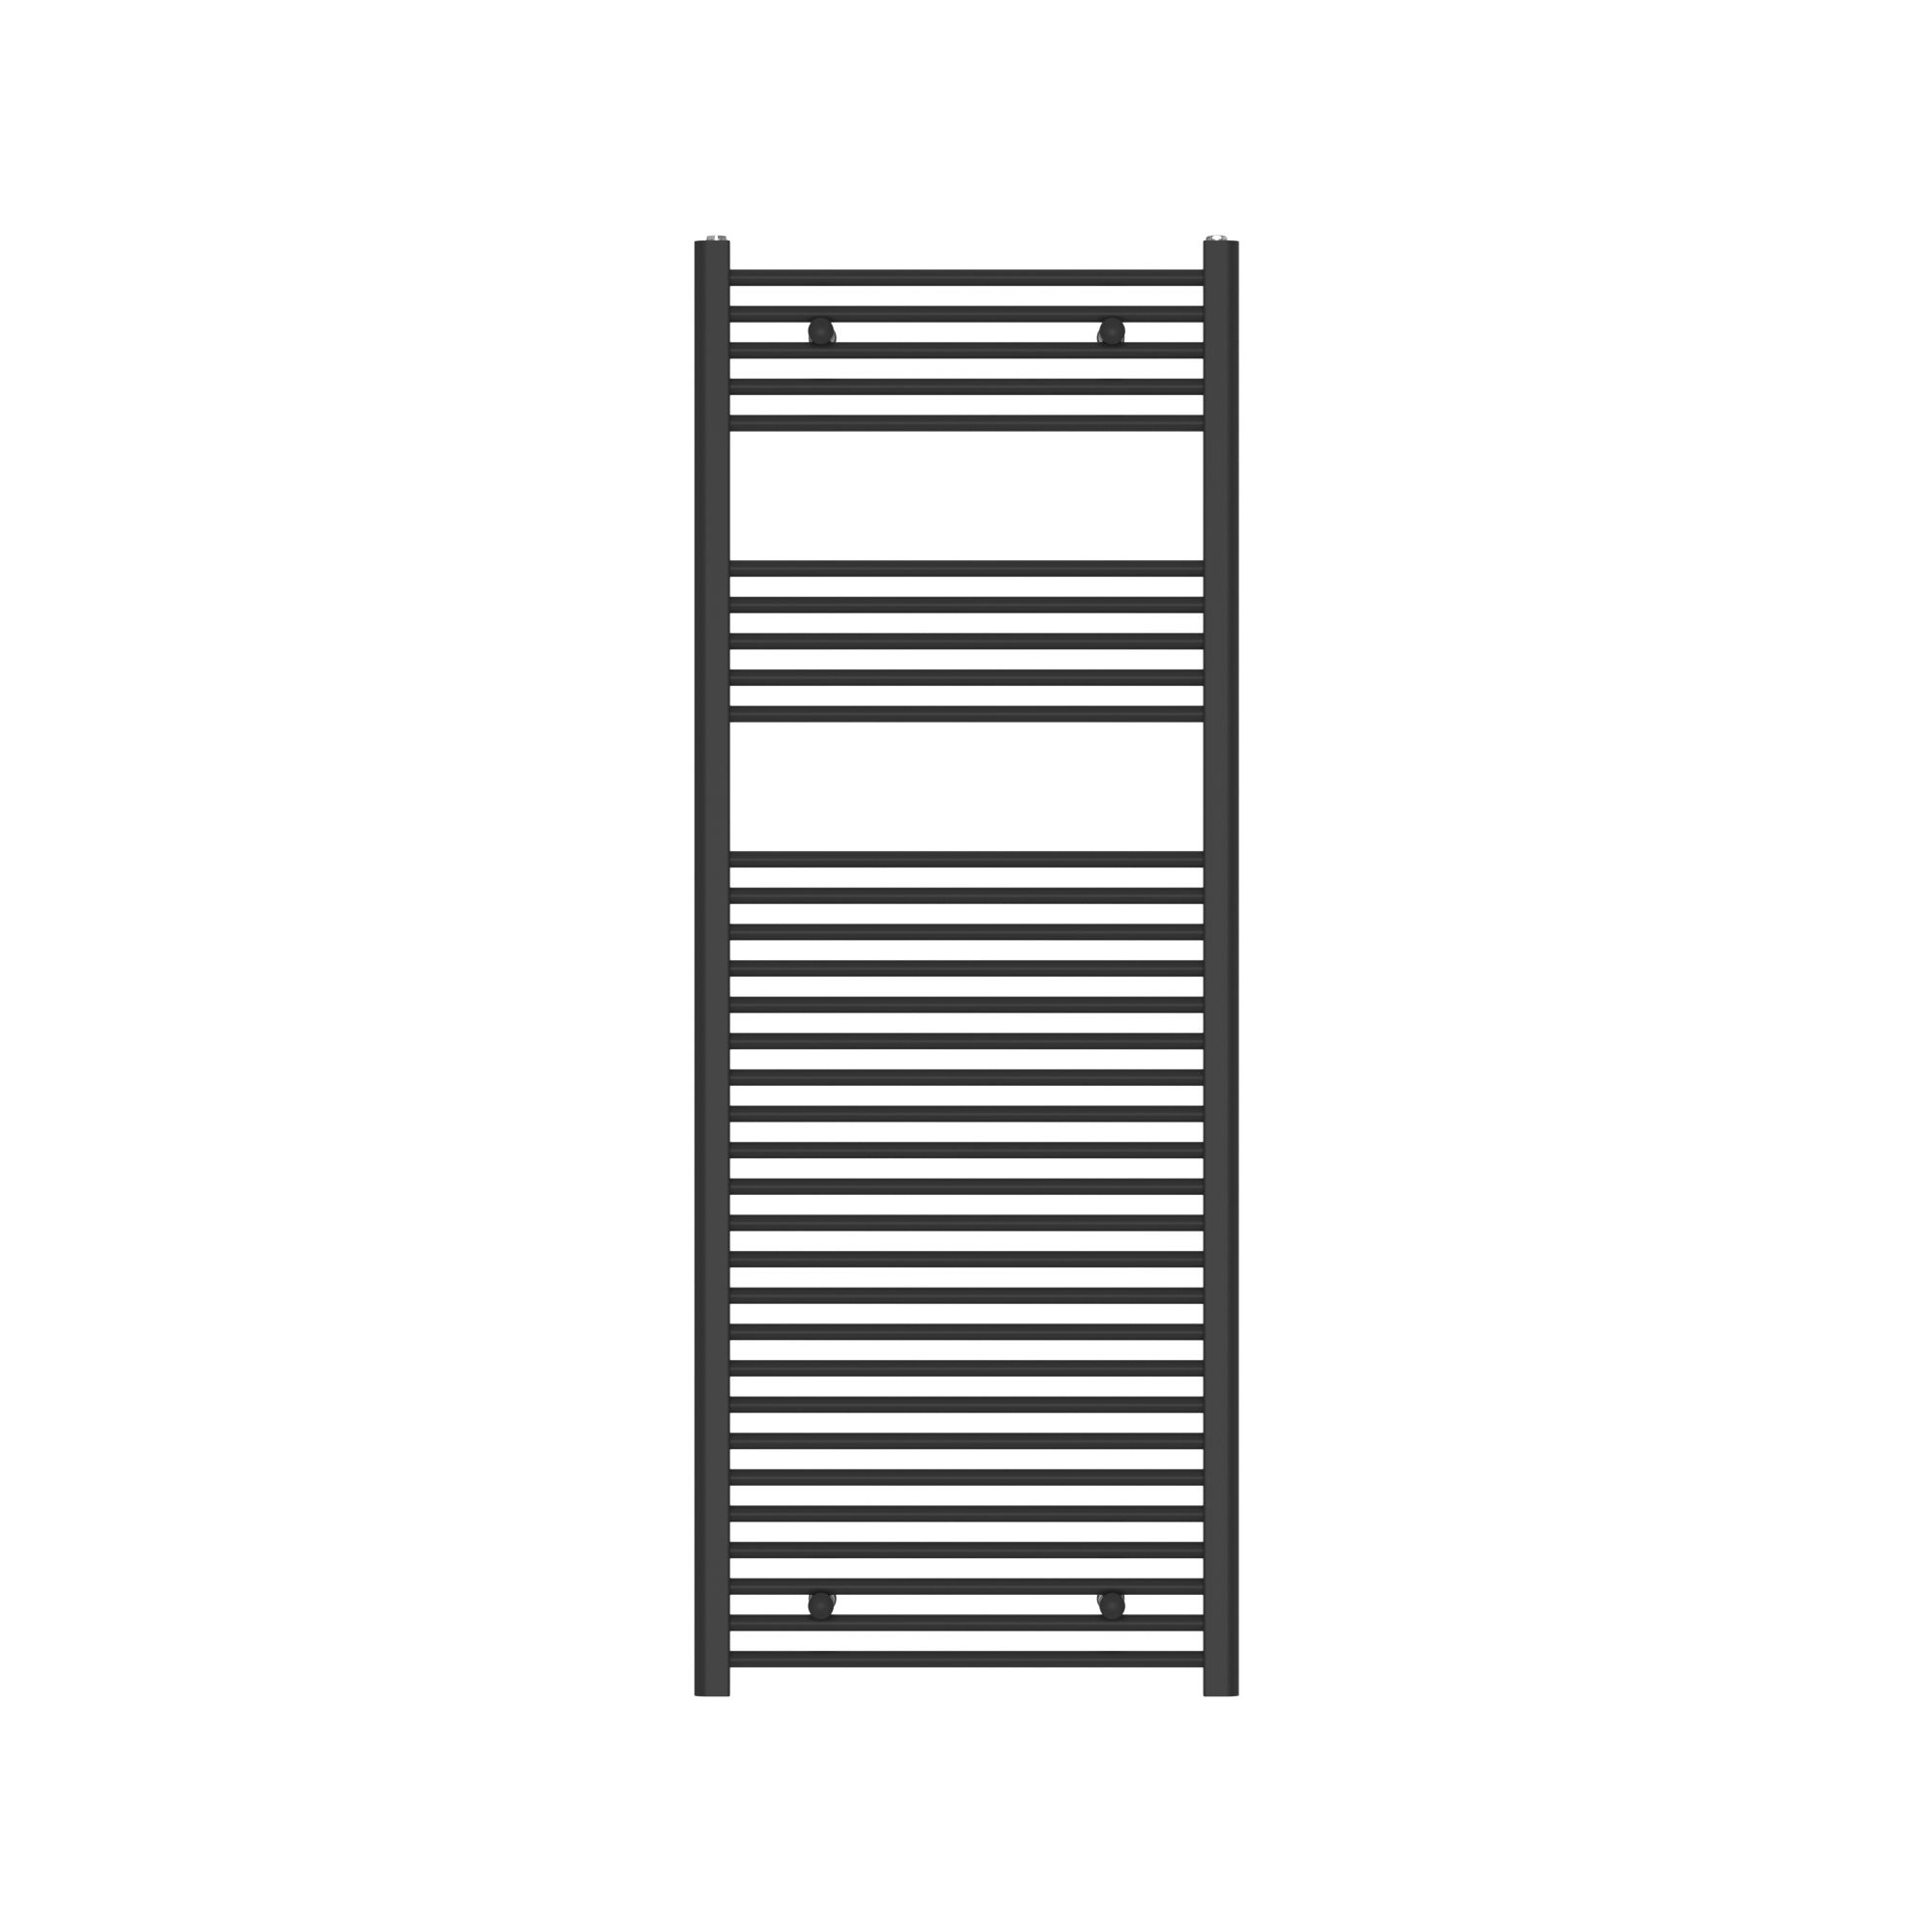 Flomasta Flat, Black Vertical Flat Towel radiator (W)600mm x (H)1600mm